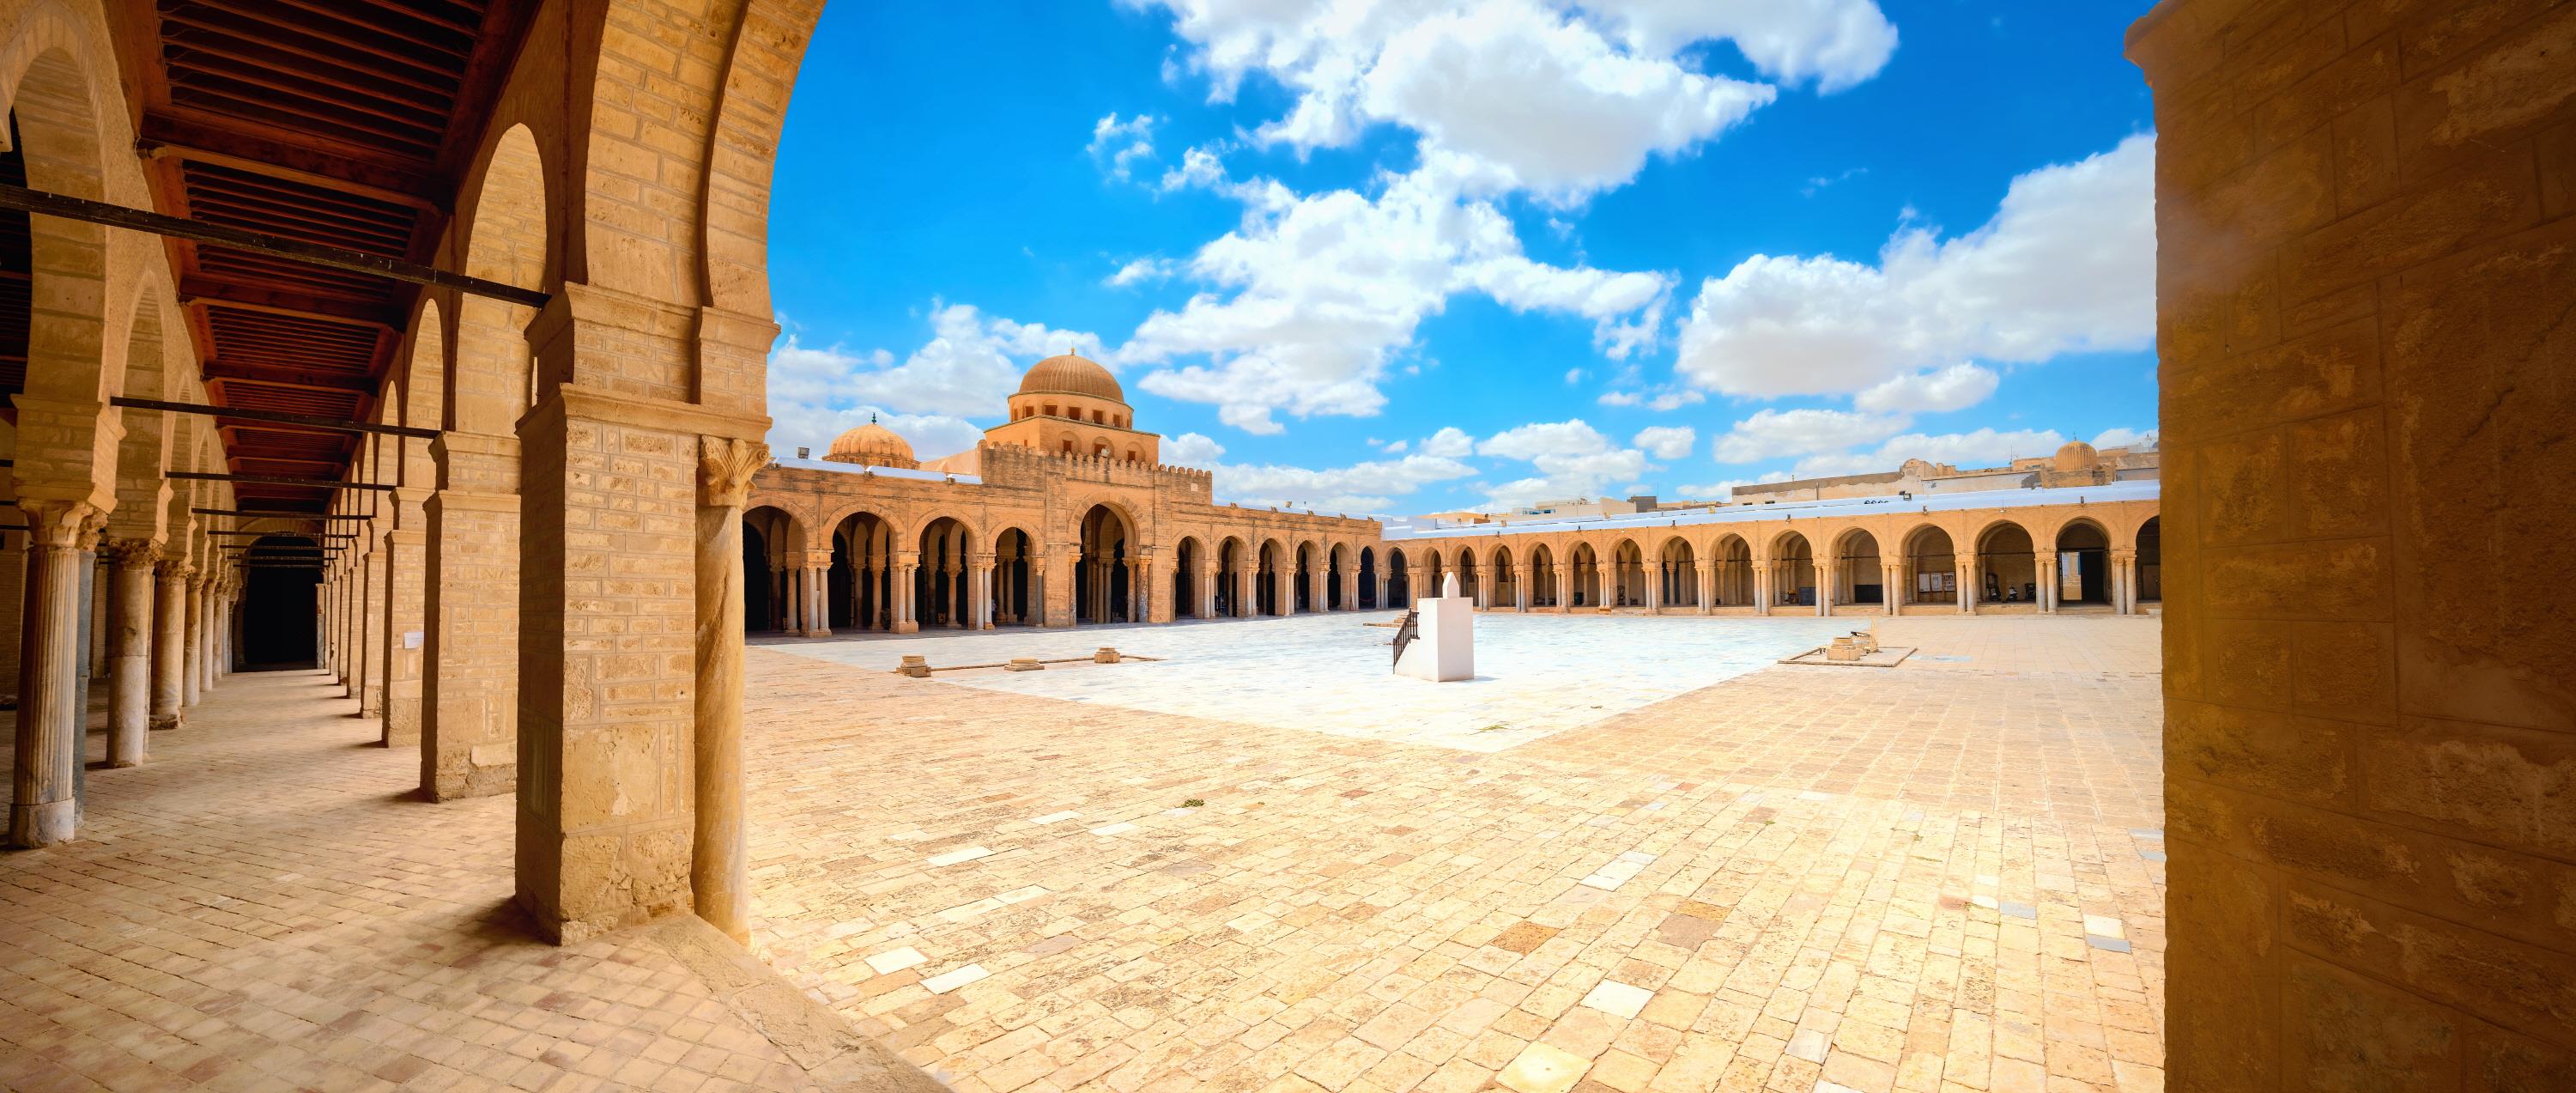 그레이트 모스크  Great Mosque of Kairouan